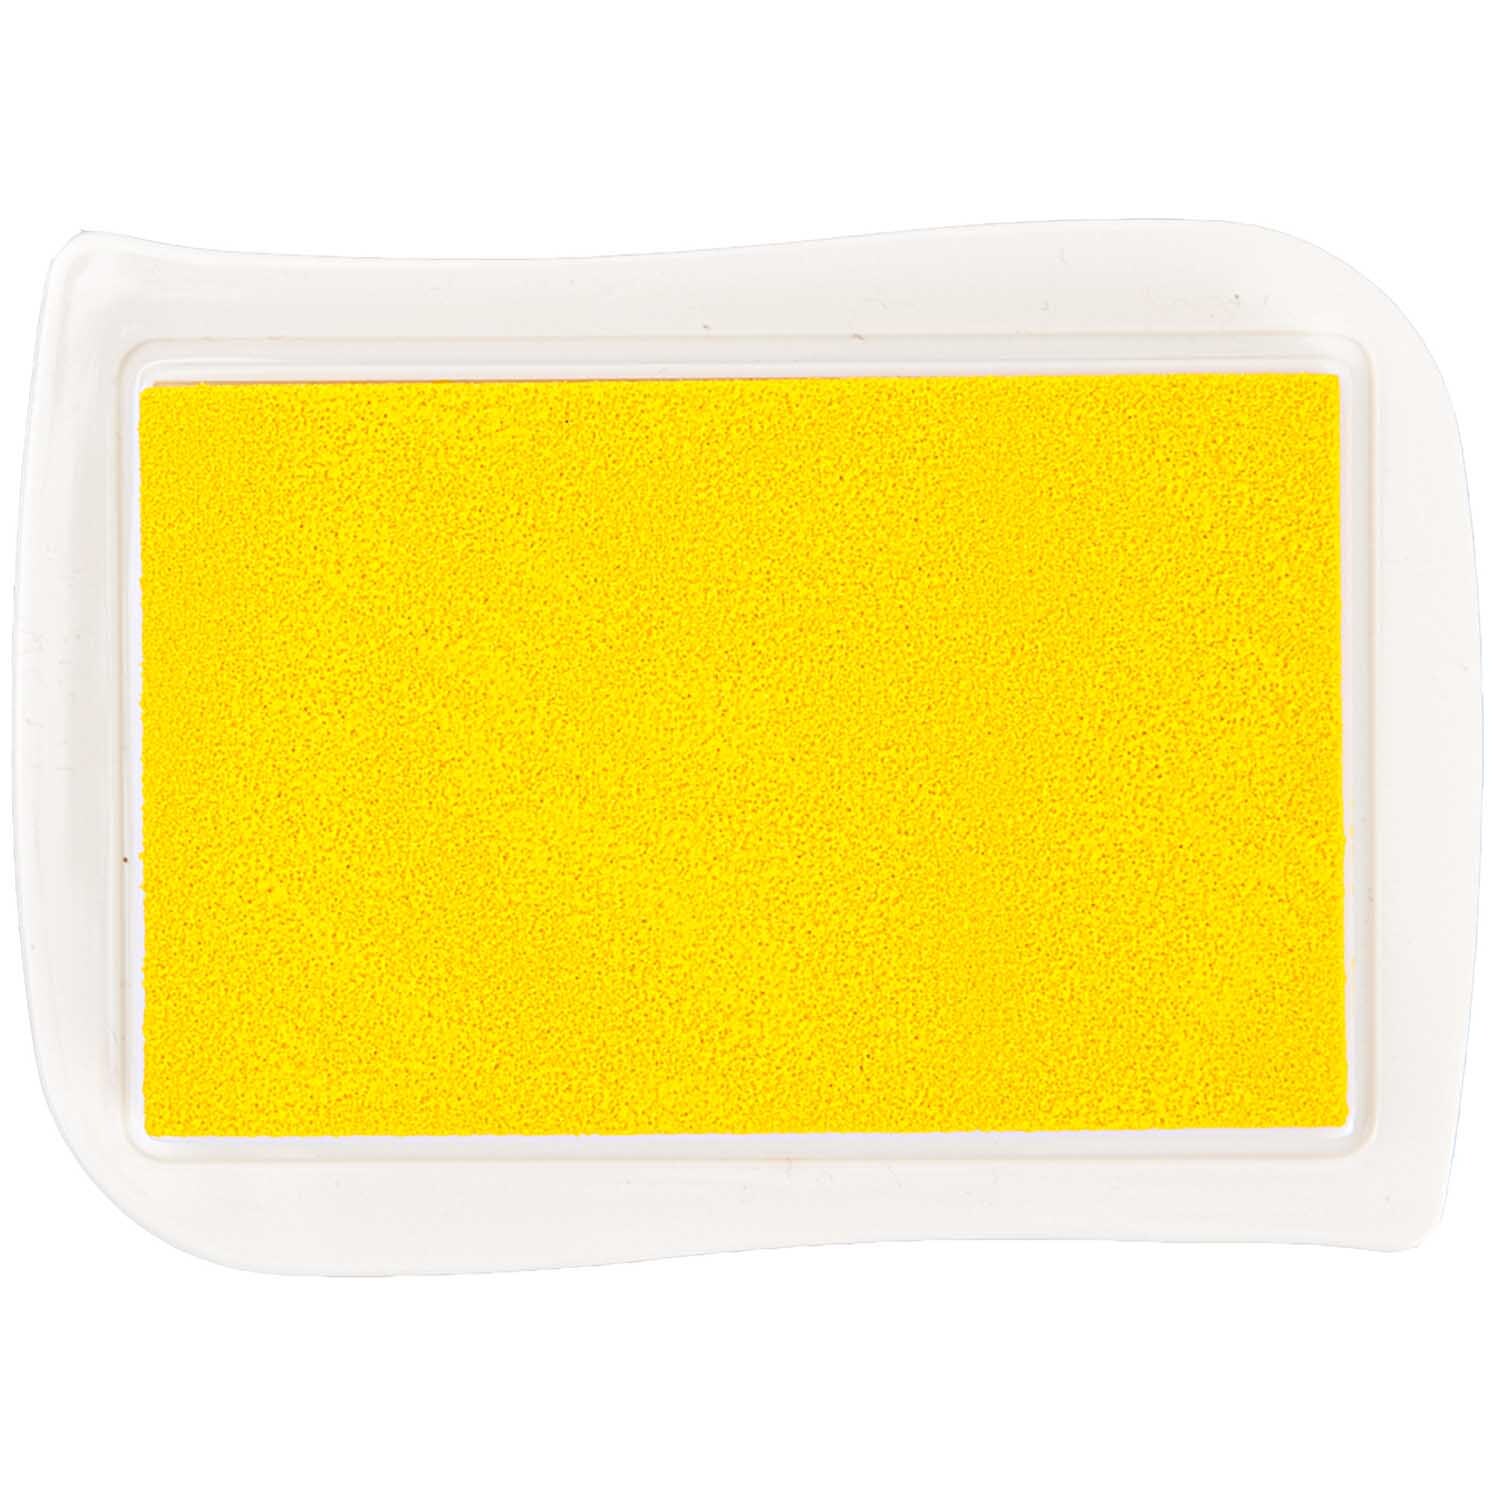 Textil Stempelkissen gelb 9,5x6,6cm